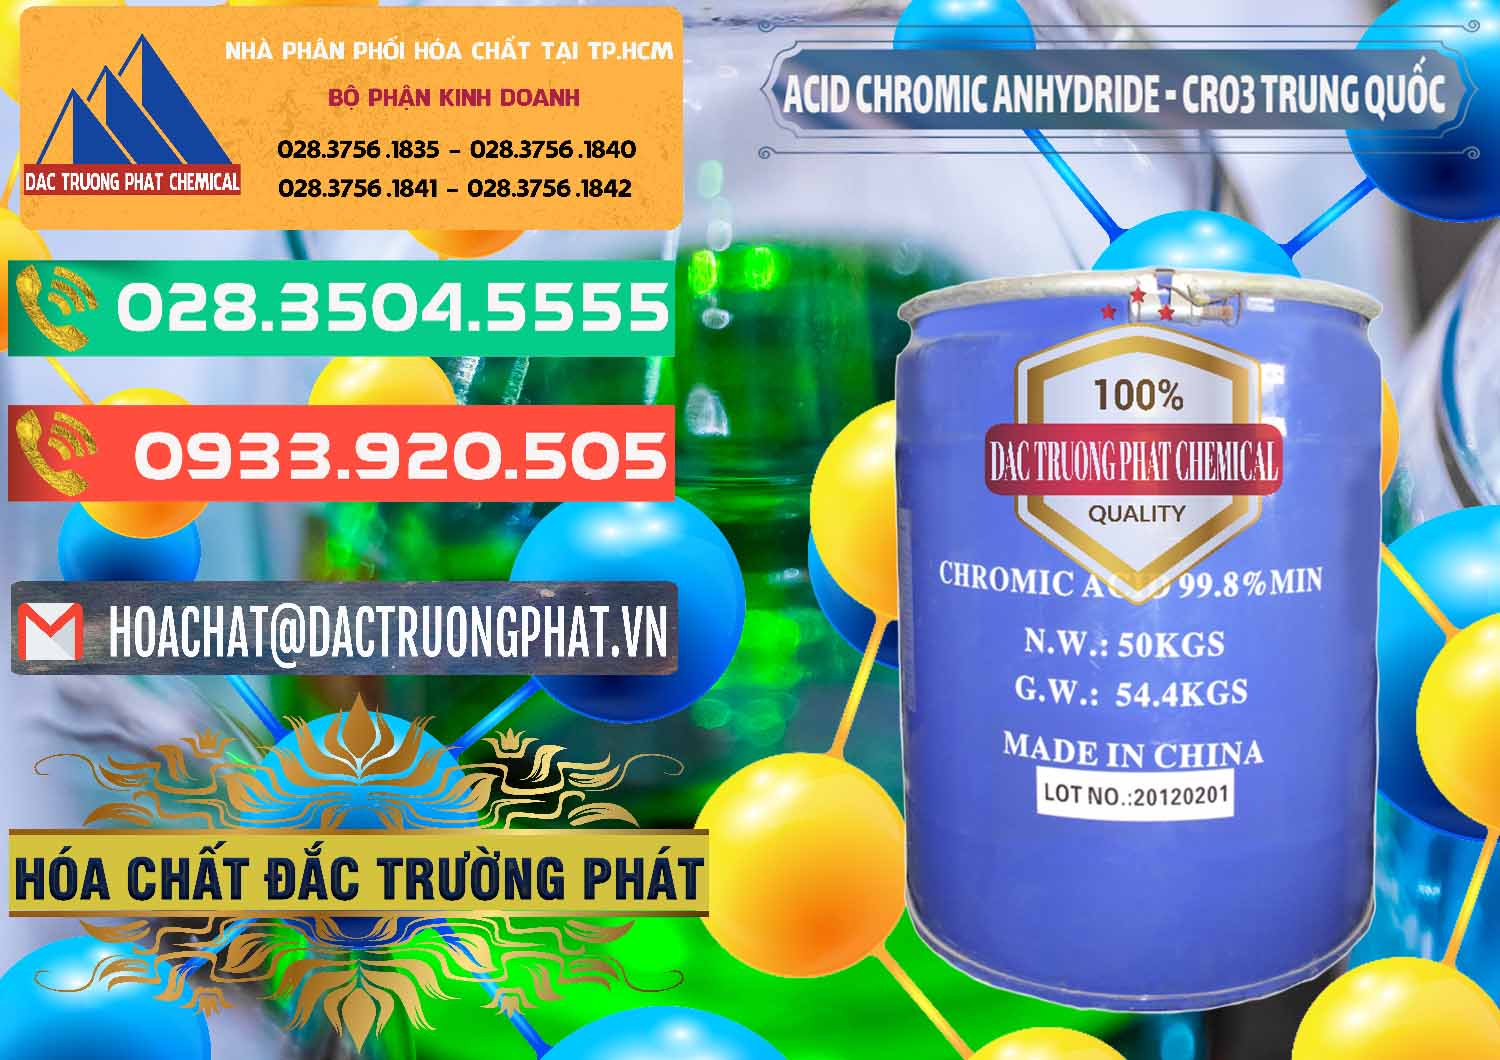 Cty bán - cung ứng Acid Chromic Anhydride - Cromic CRO3 Trung Quốc China - 0007 - Đơn vị chuyên cung cấp ( bán ) hóa chất tại TP.HCM - congtyhoachat.com.vn